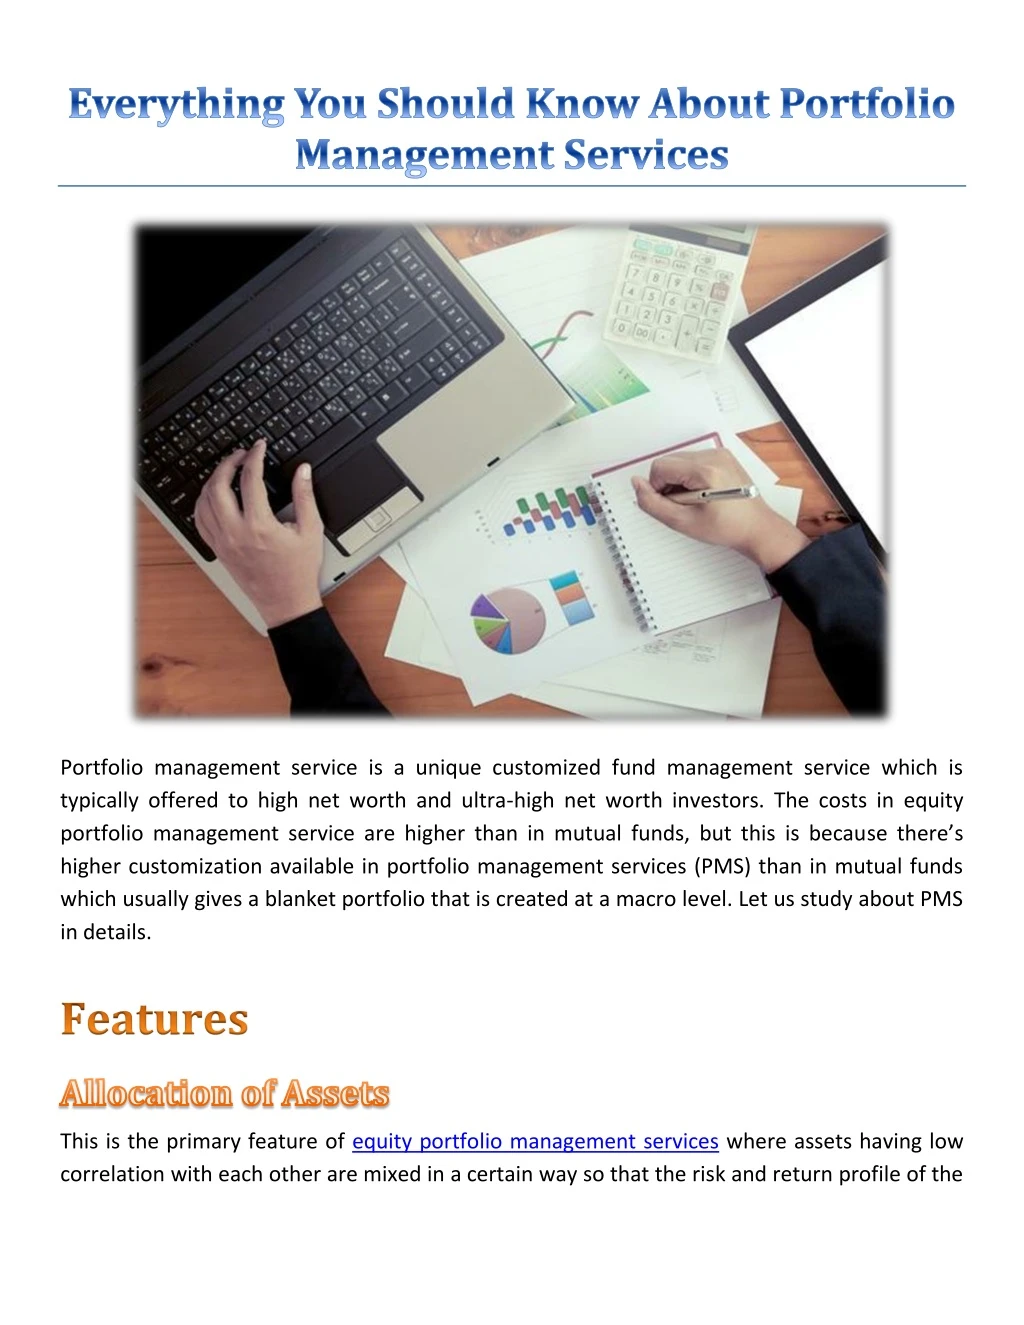 portfolio management service is a unique